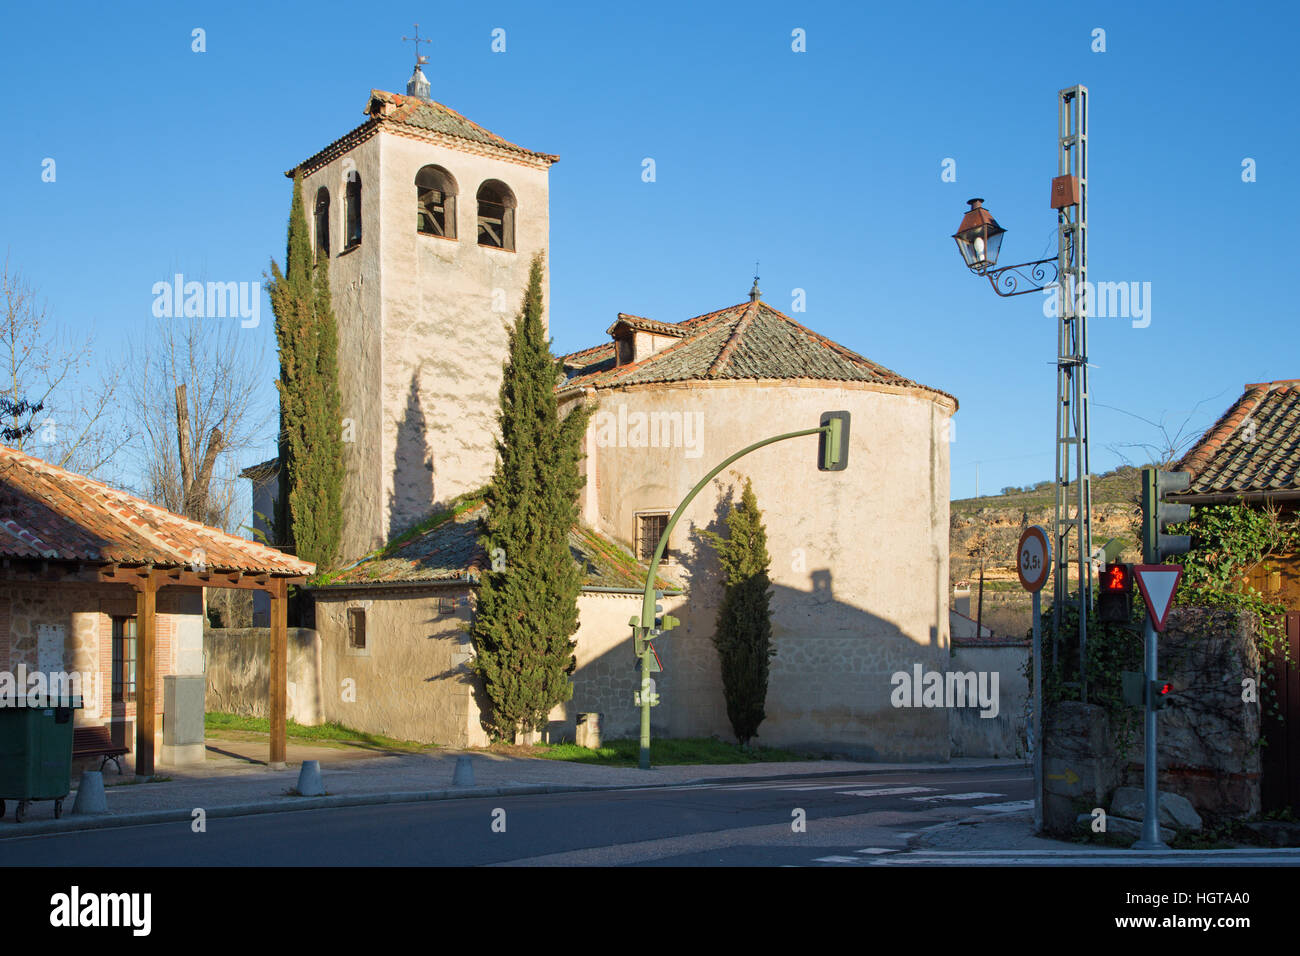 Segovia - The romanesque church Iglesia de San Marco. Stock Photo